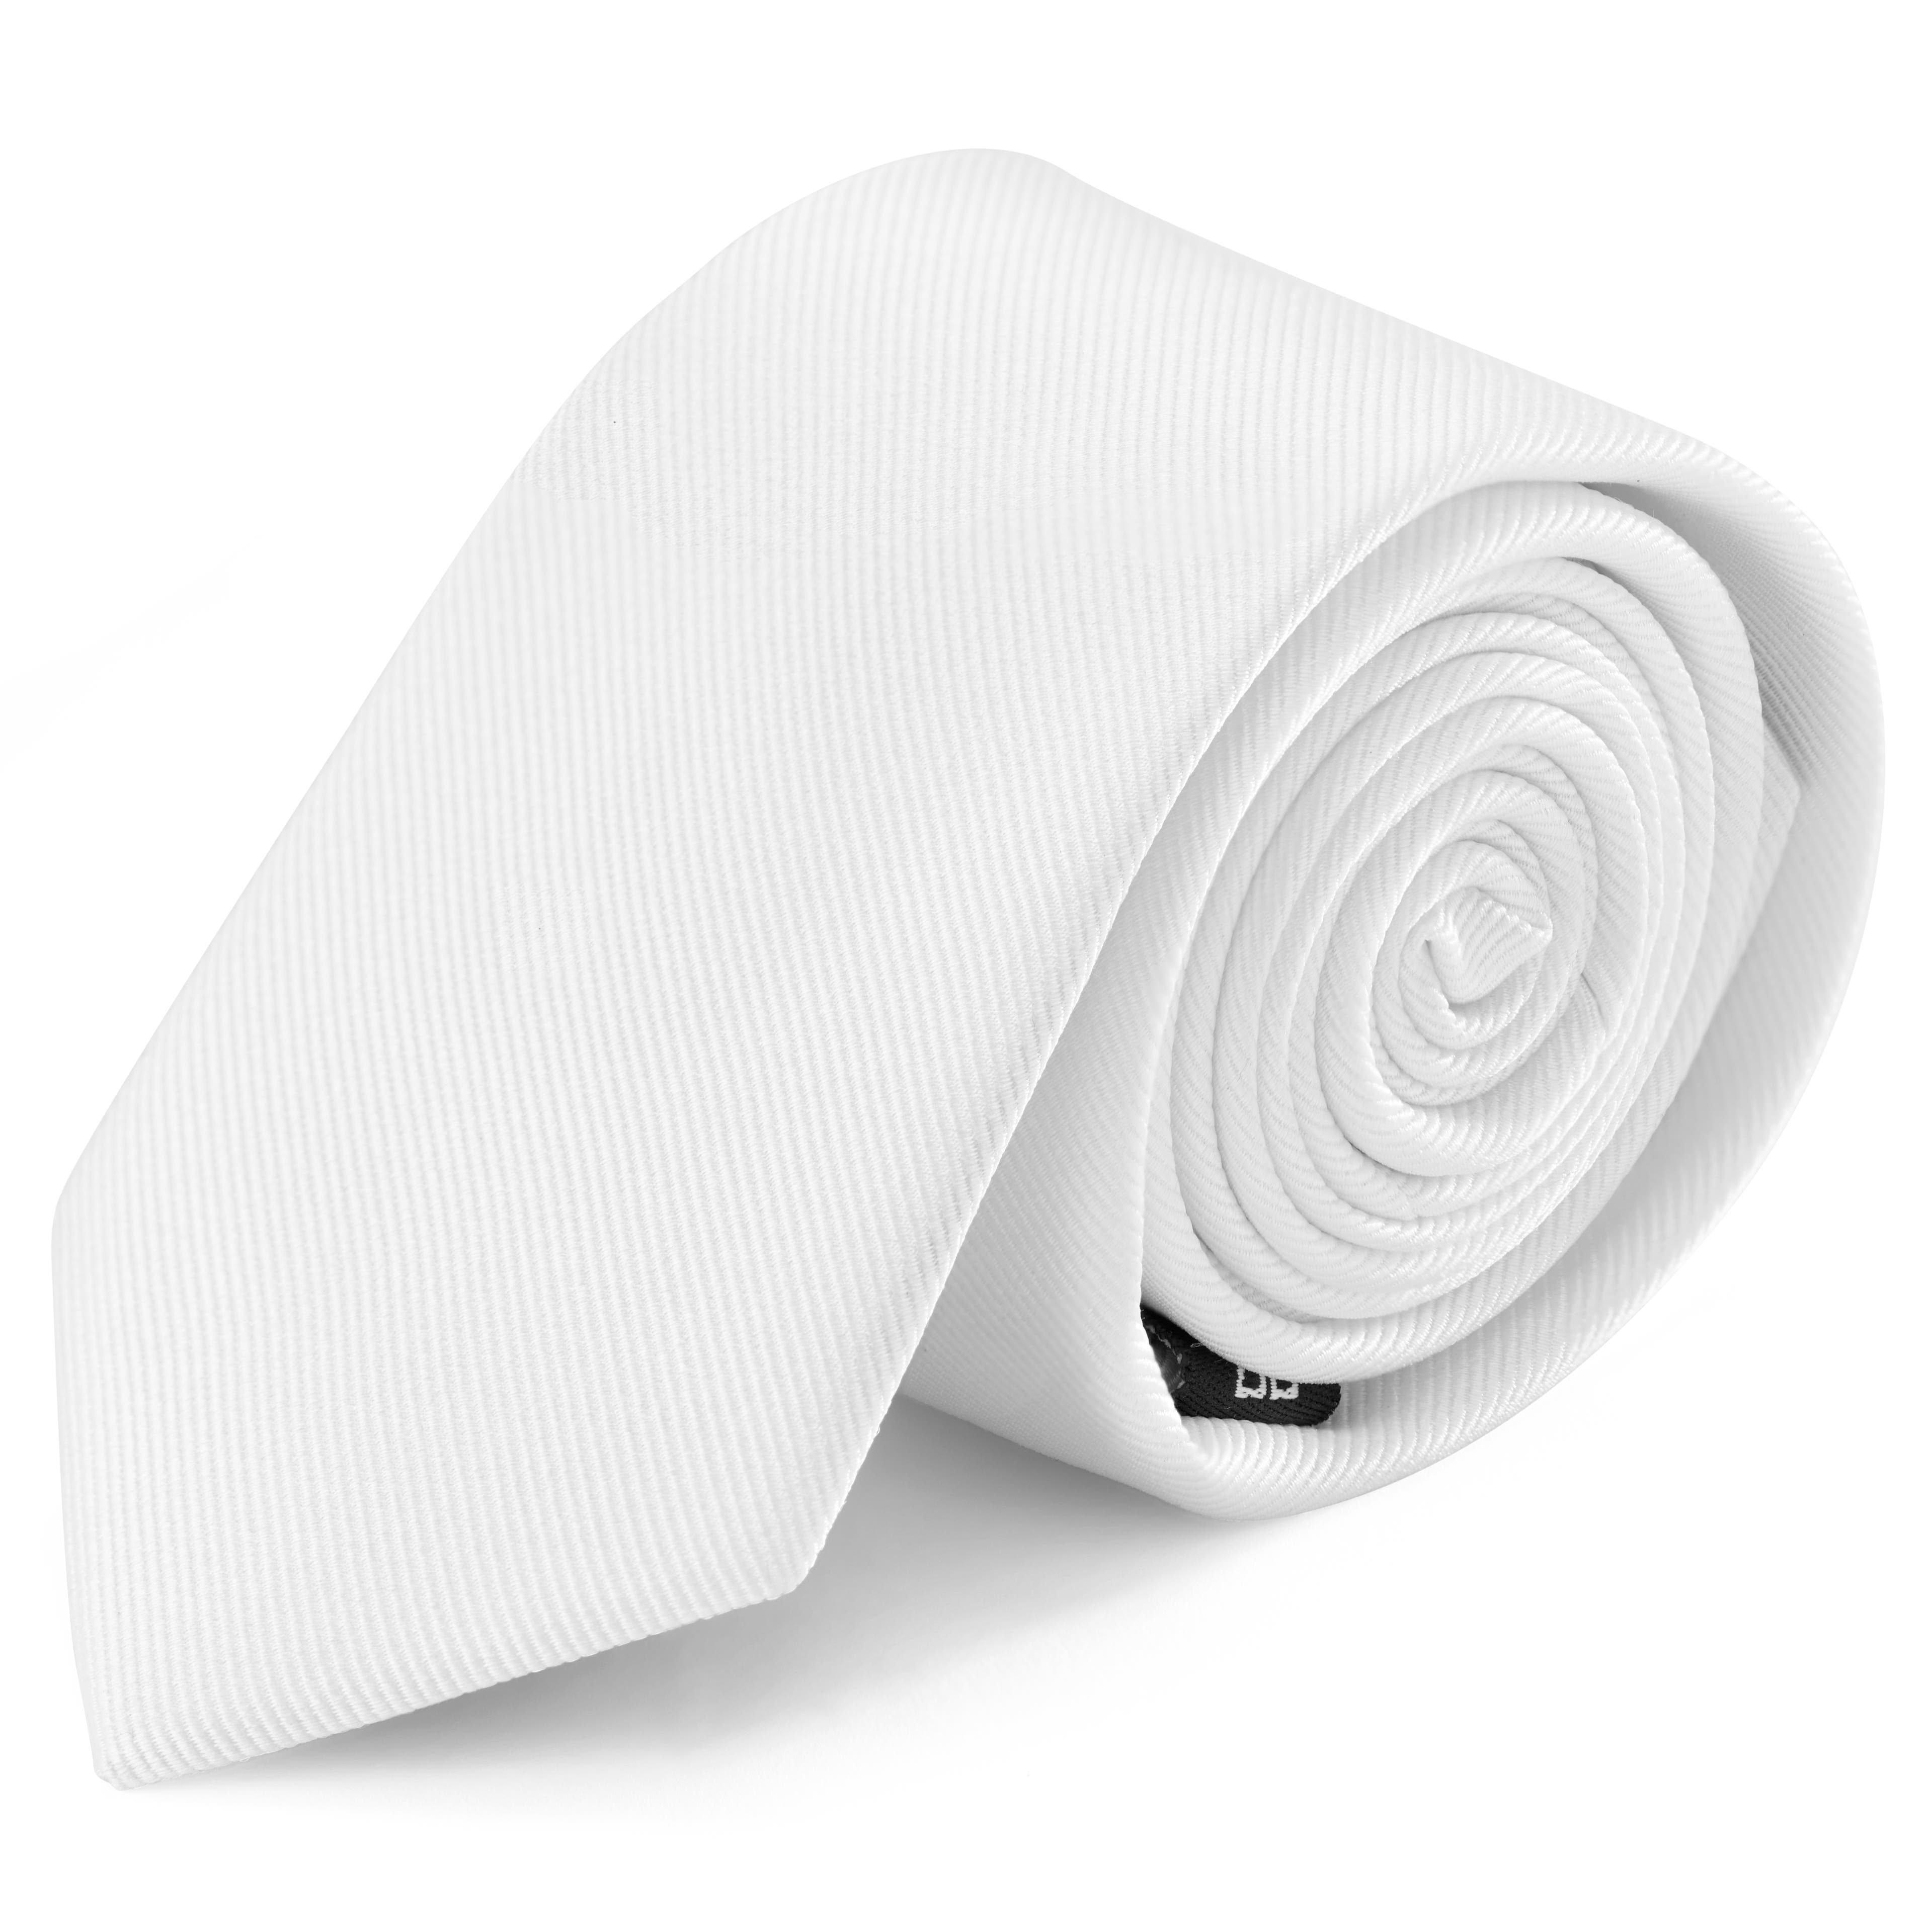 Cravate blanche en sergé de soie 6 cm